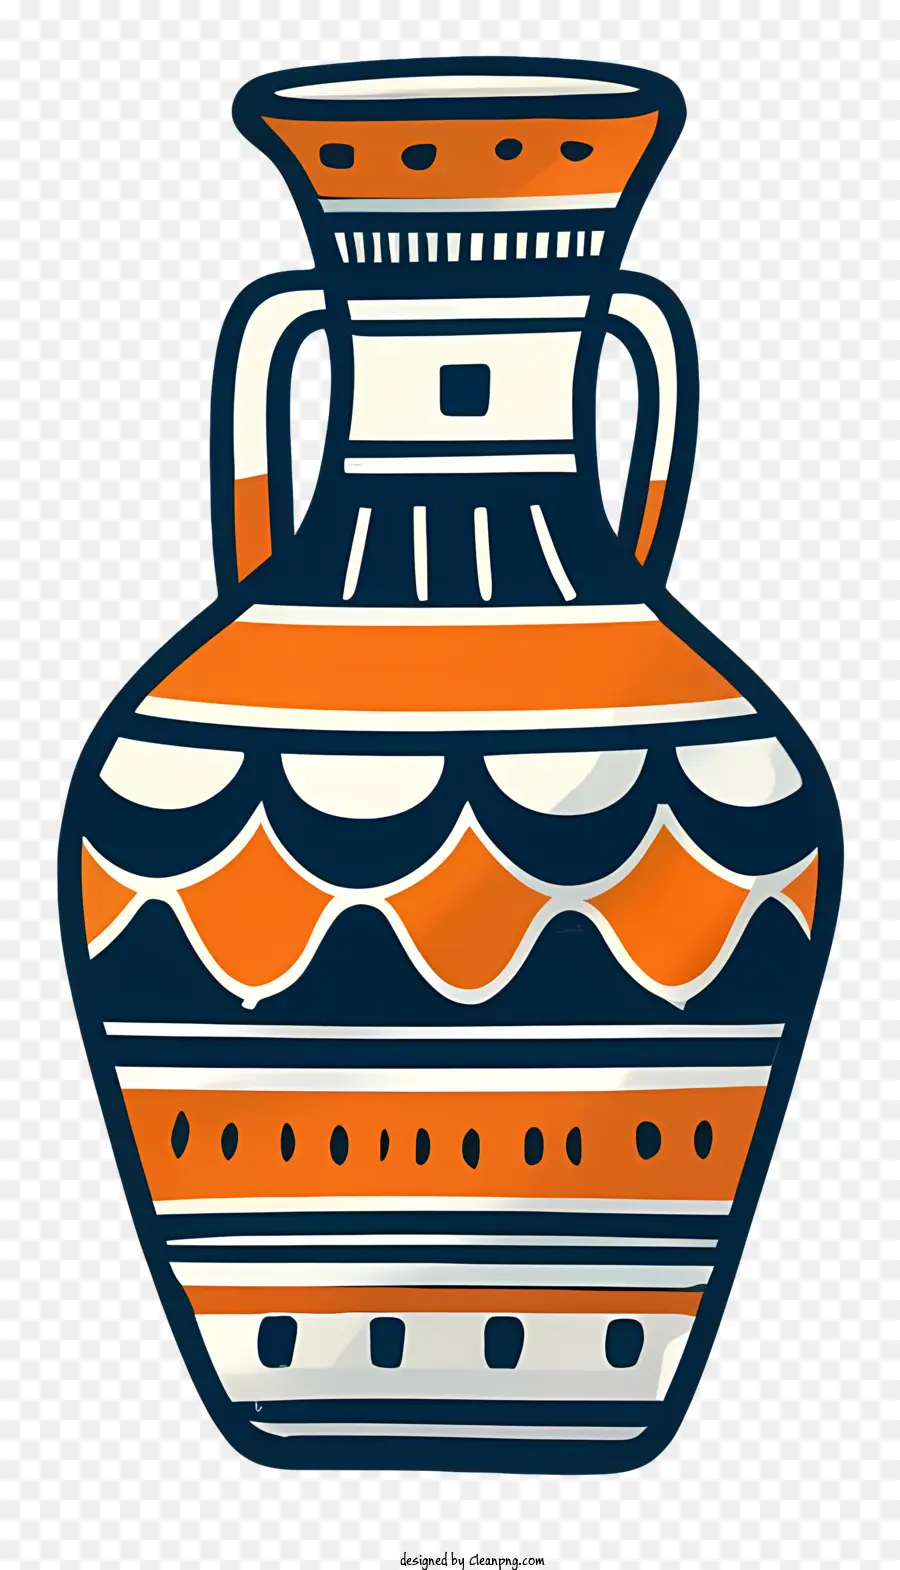 Cartoon Tonvase Orange und Blue Vase Wirbelmuster rundes Körpervase - Orange und blaue Tonvase mit Wirbelmuster